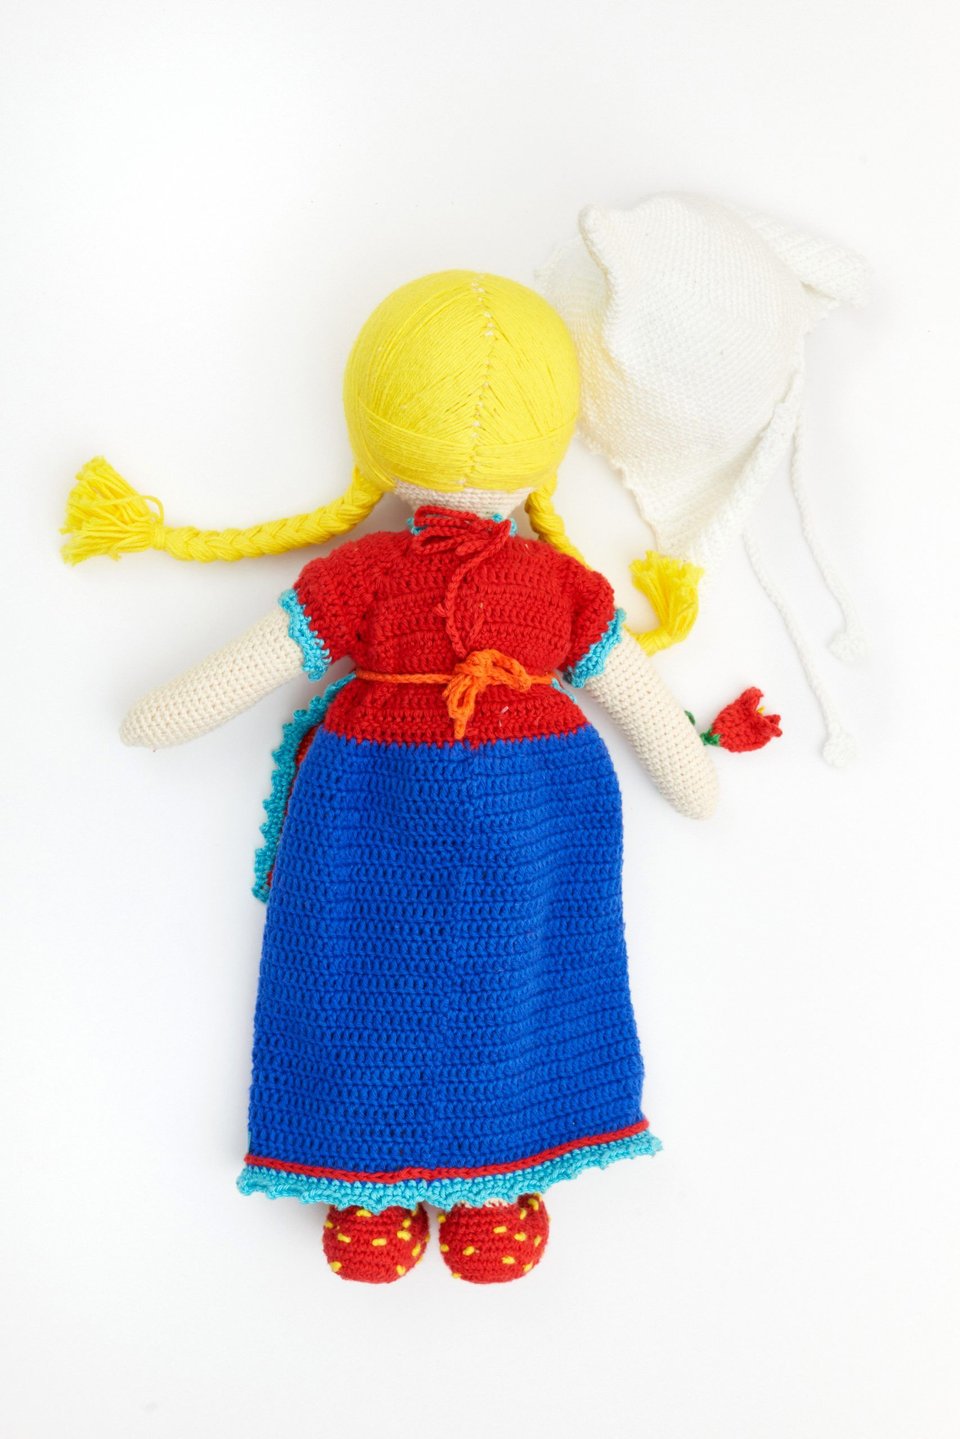 Traditional Dutch Girl Doll